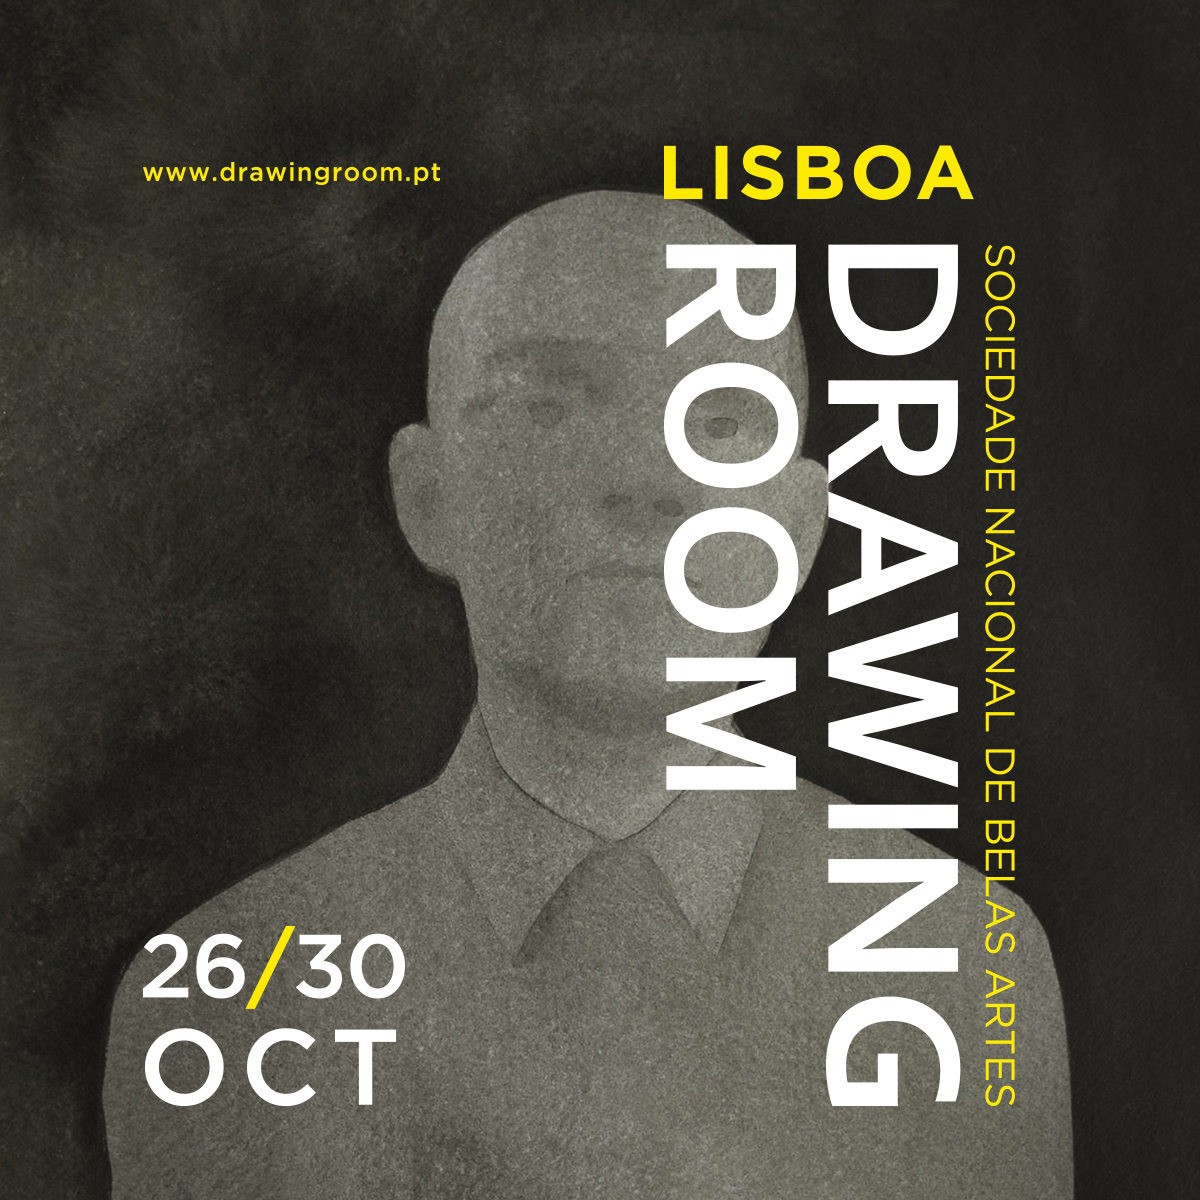 Nova imagem para da 5ª edição da Drawing Room Lisboa